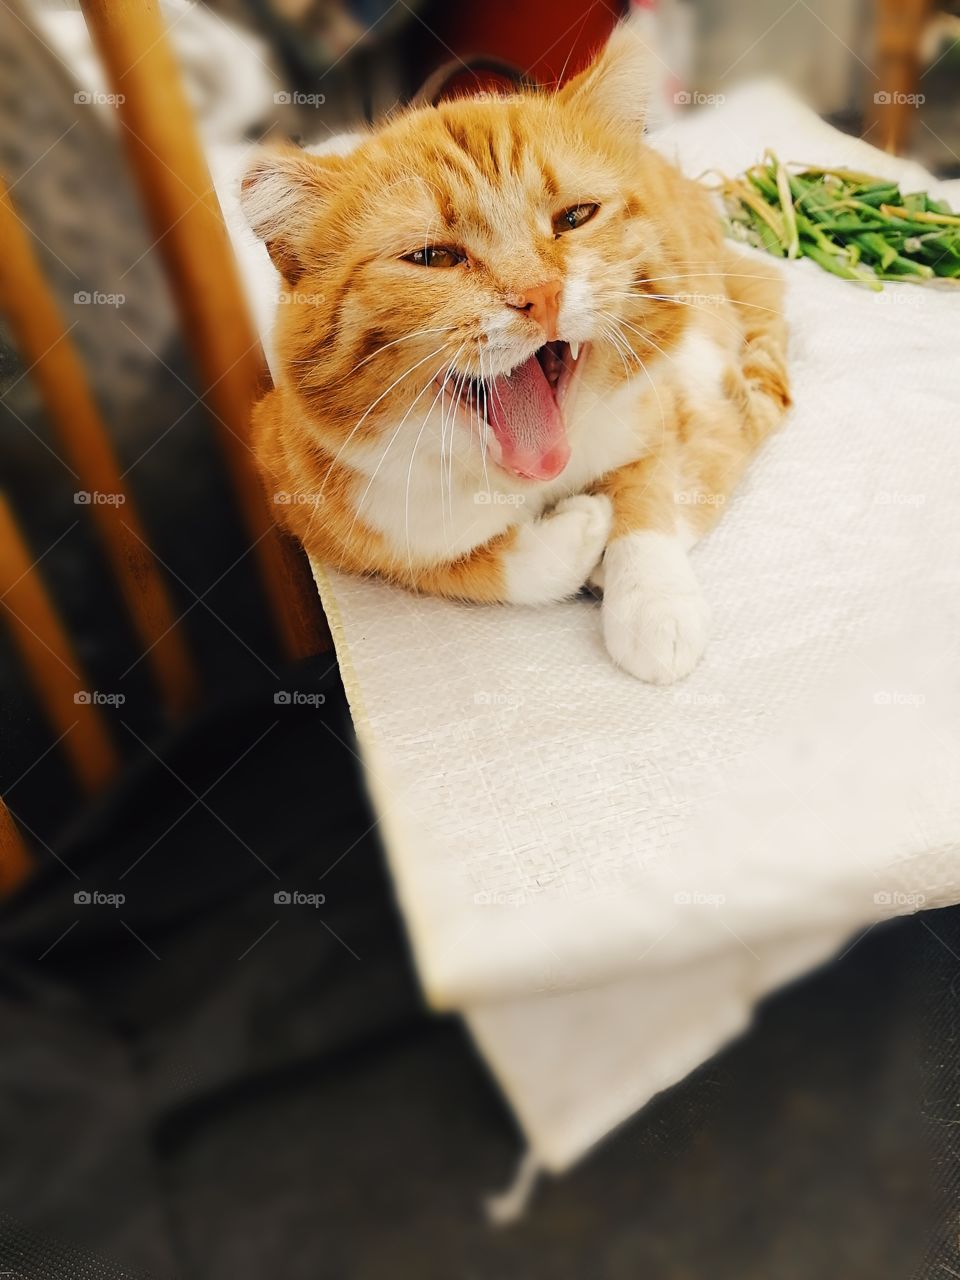 Cat